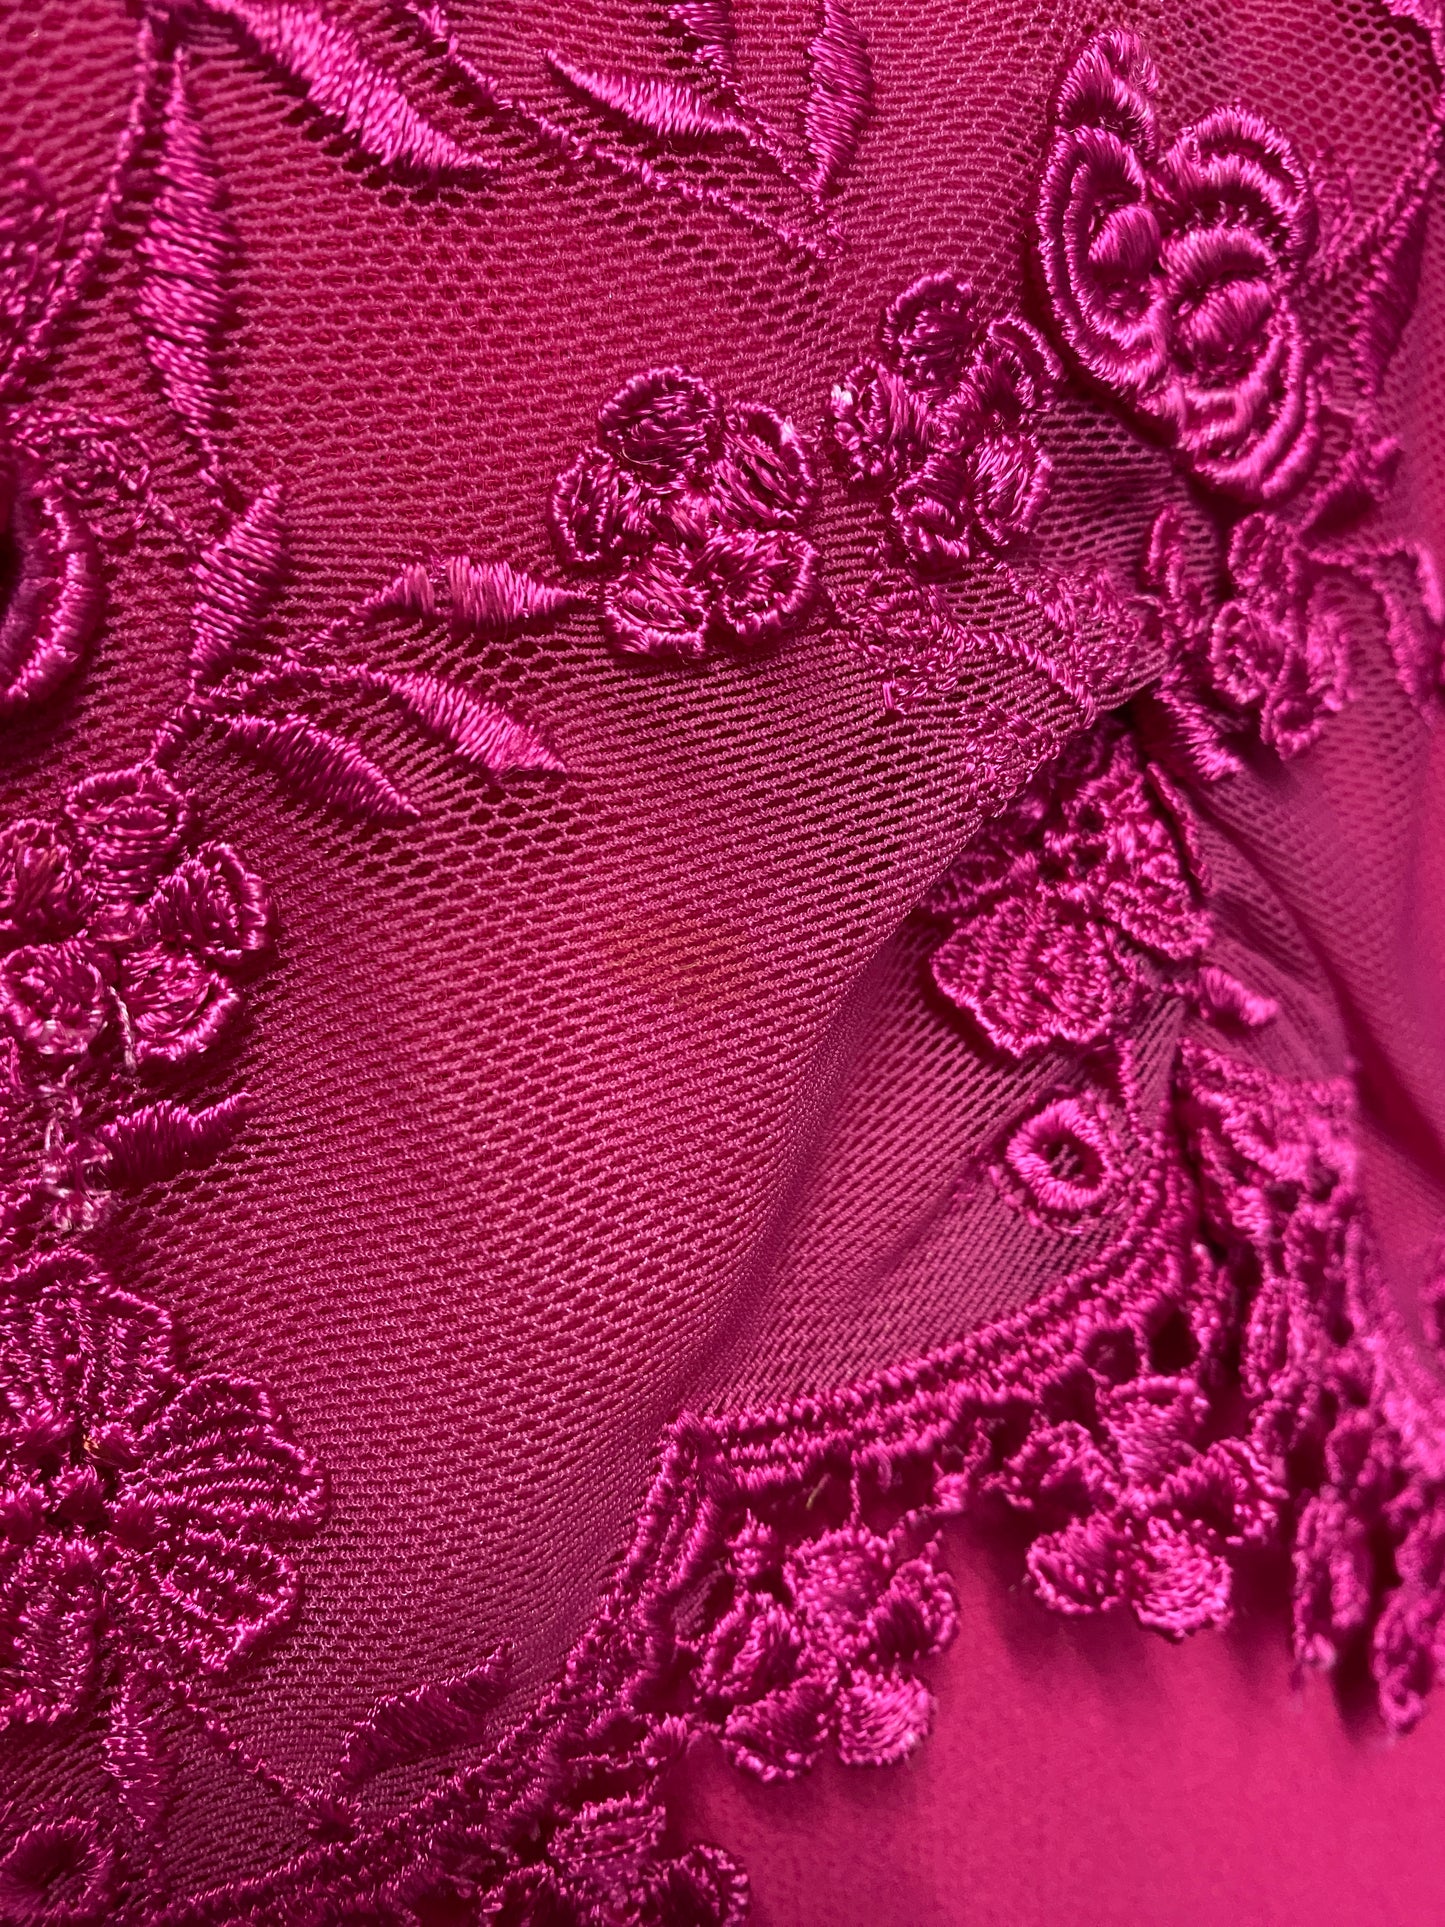 Karen Millen Pink Lace Sleeveless Occasion Dress 12